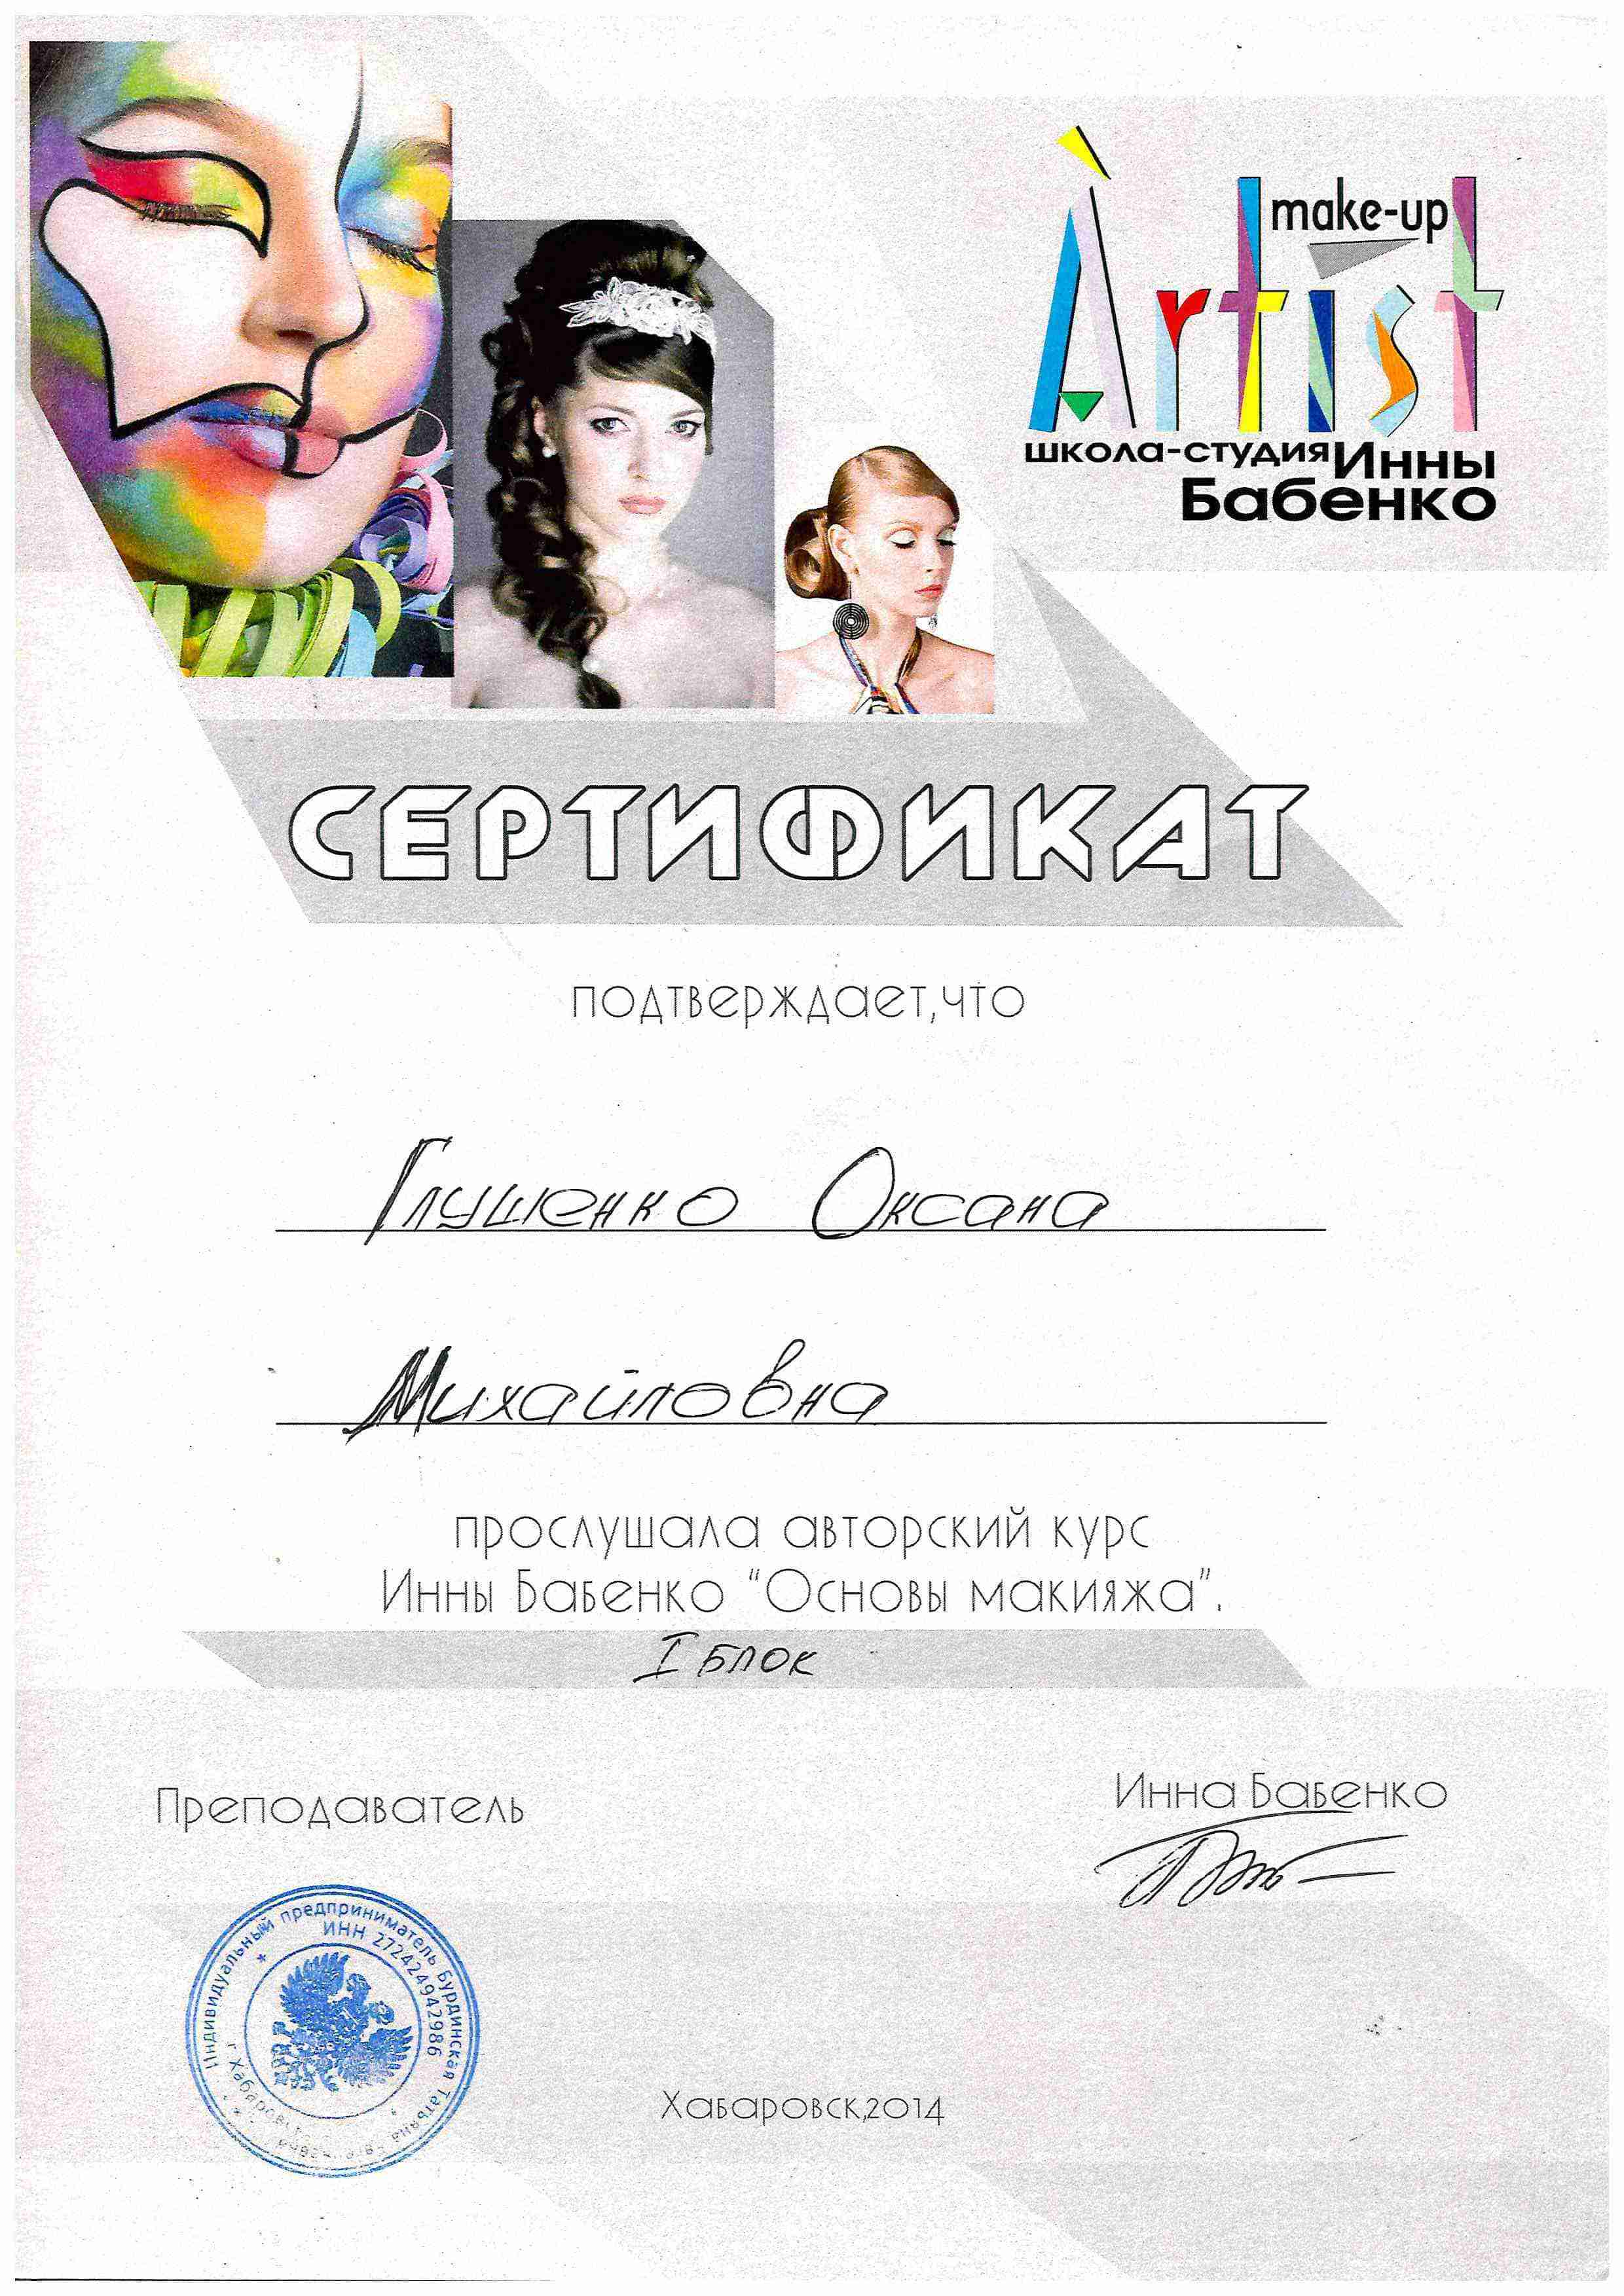 Сертификат, перманентный макияж, makeup, Хабаровск, Глущенко Оксана